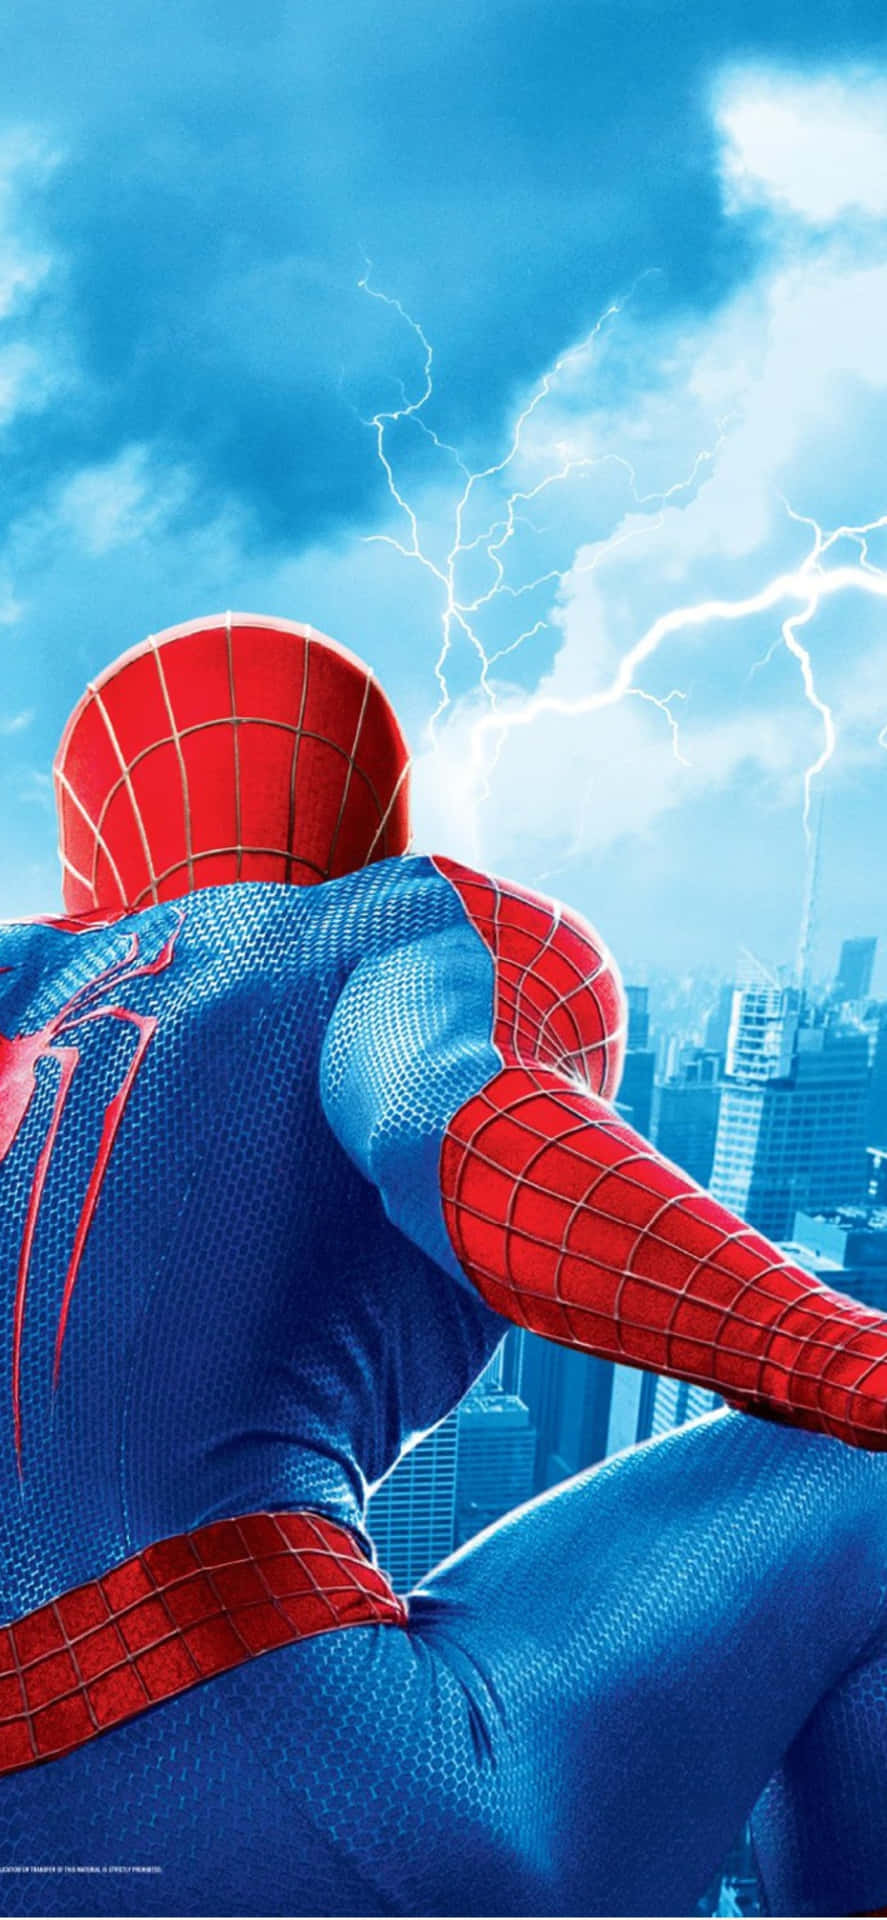 Nyd den fantastiske eventyr af Spider Man på din iPhone i dag! Wallpaper